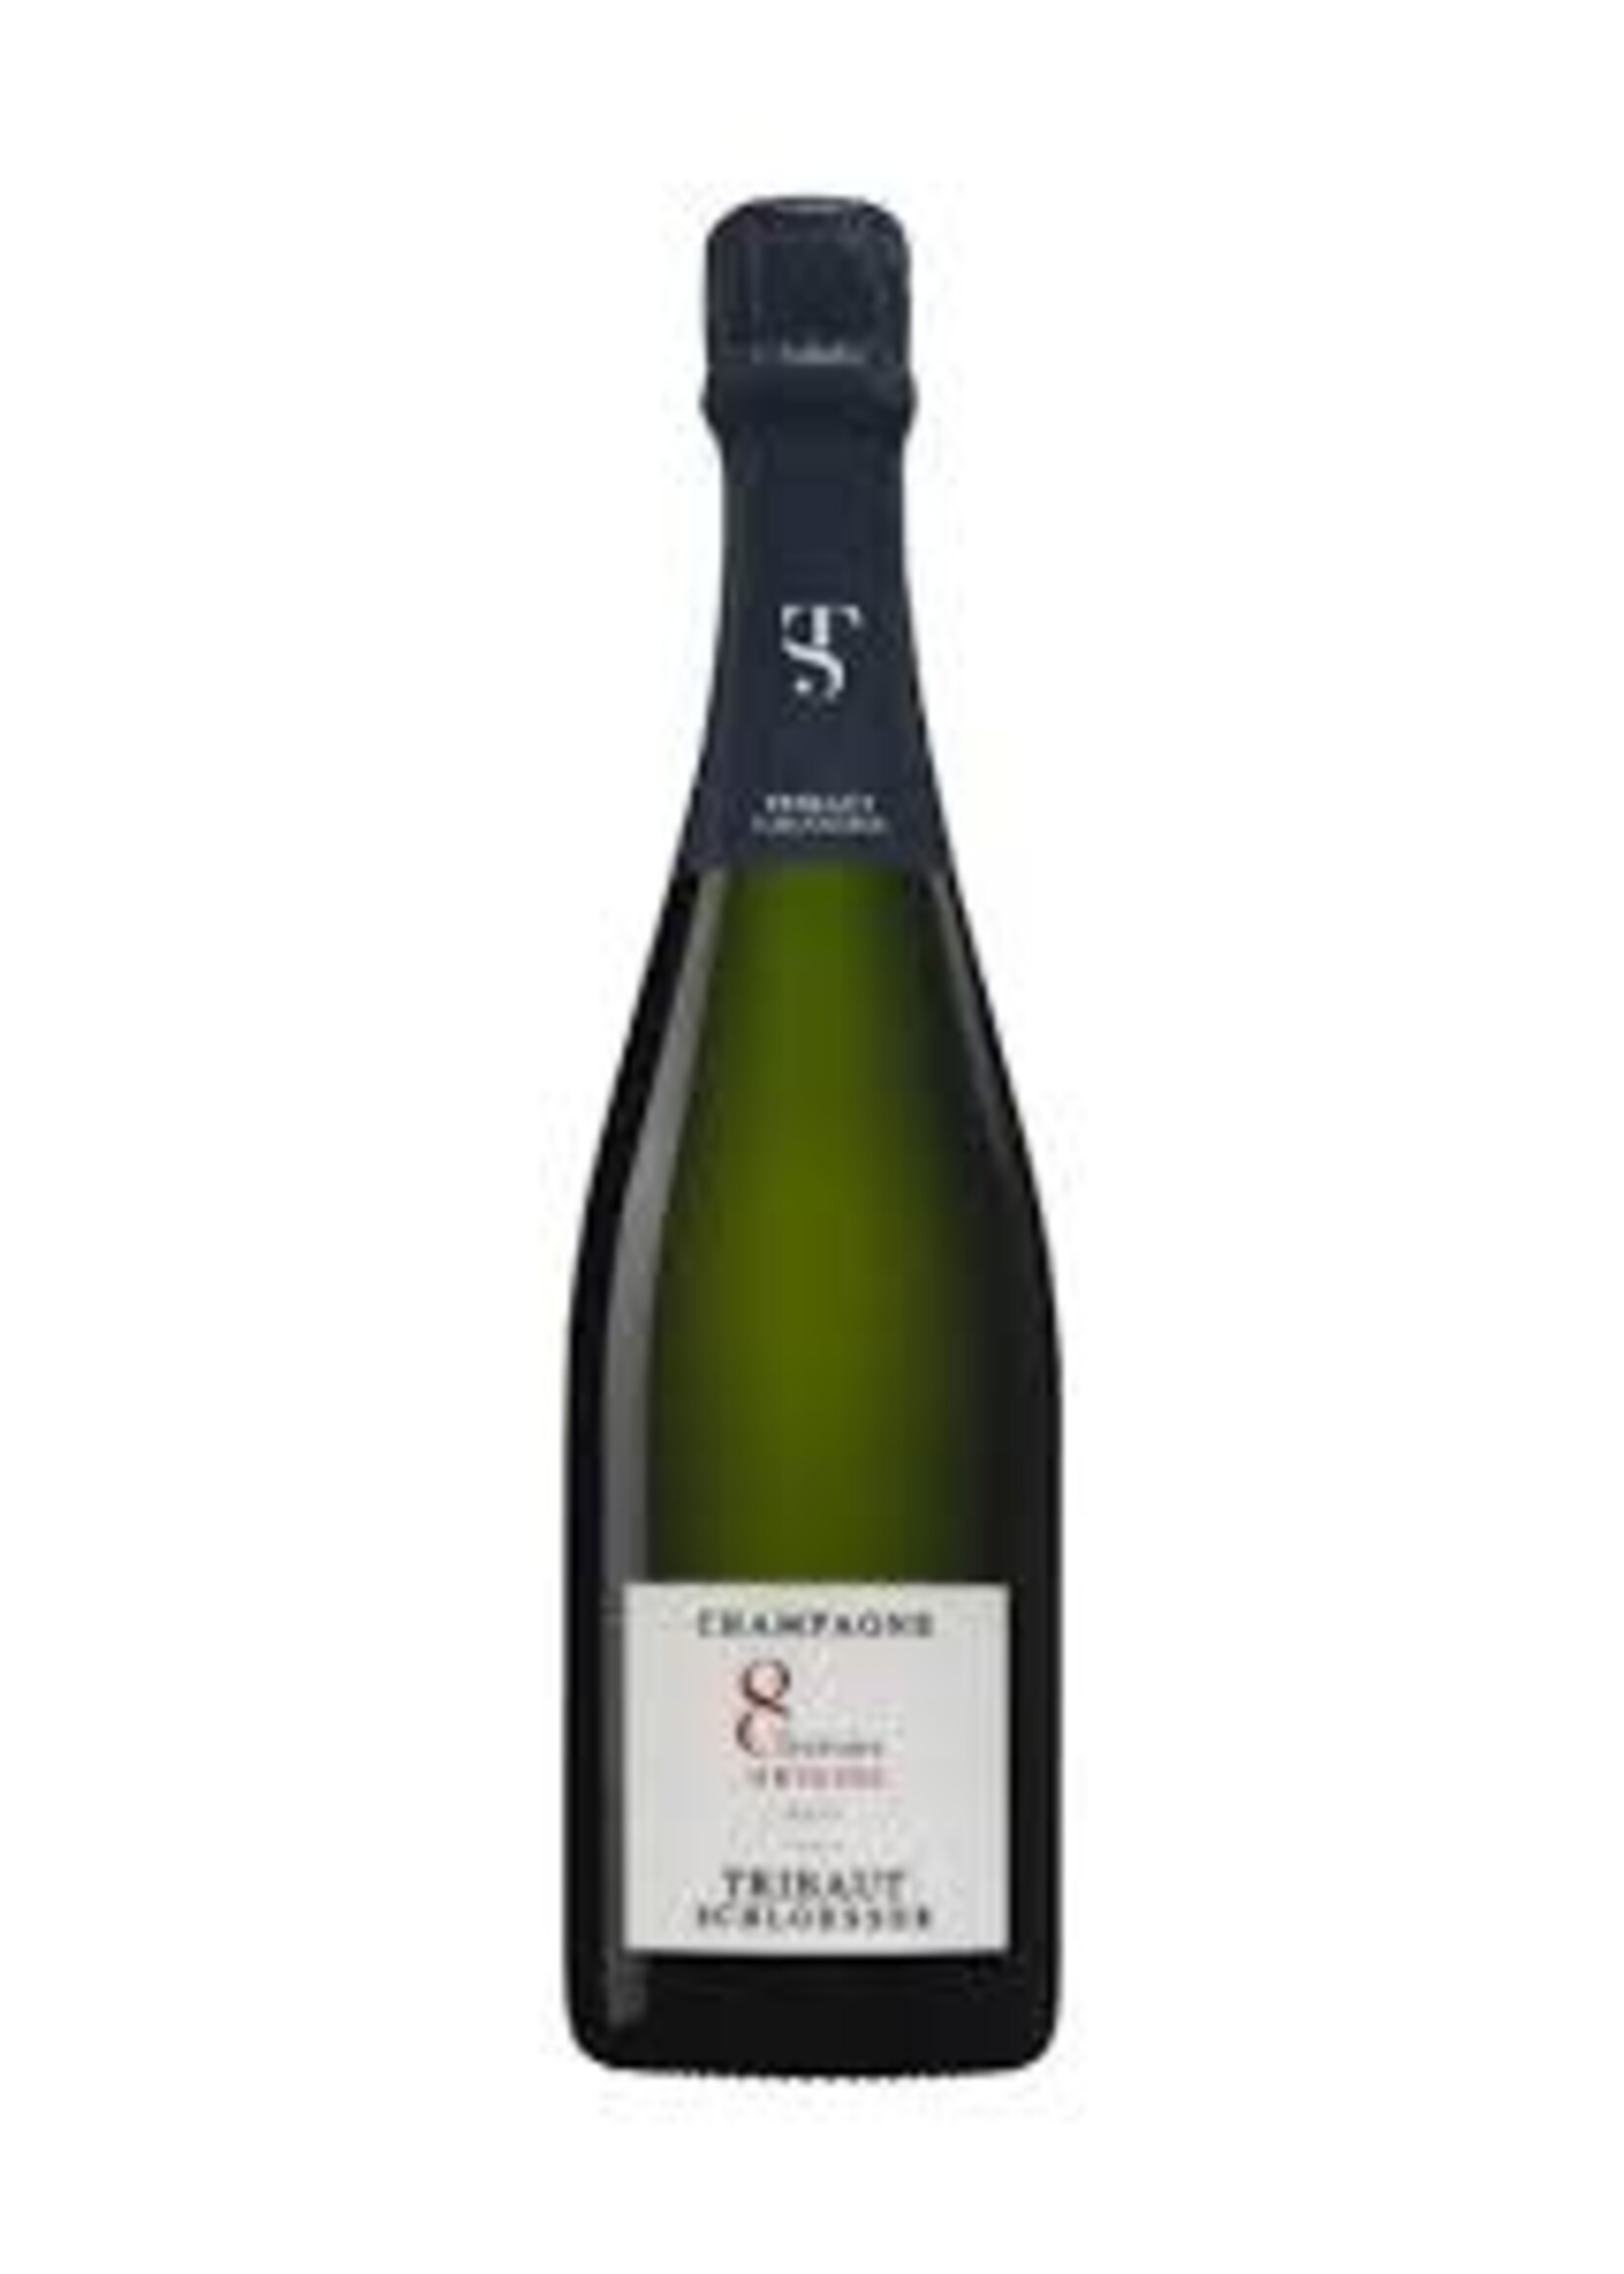 Tribault Schloesser Champagne 8 Terroirs Brut Origine 750ml